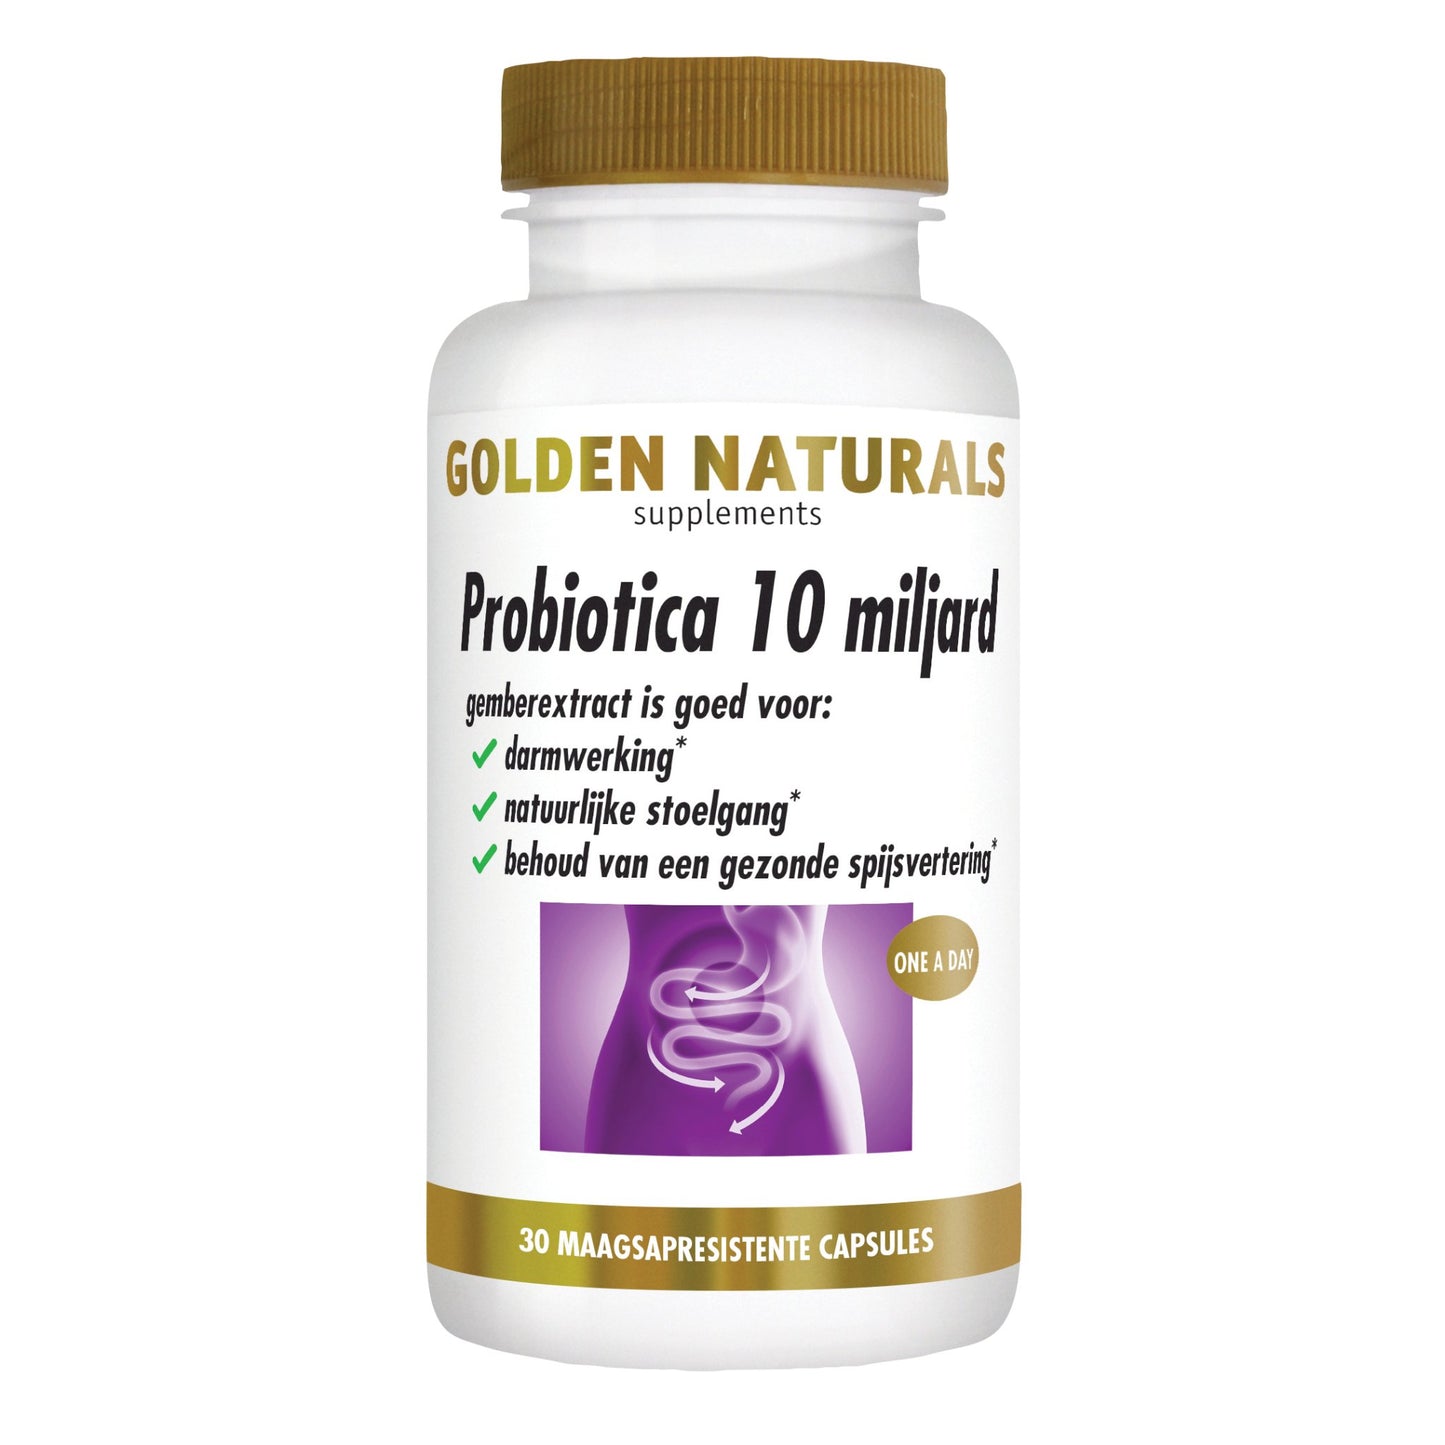 Probiotica 10 miljard - 30 - veganistische maagsapresistente capsules Supplement Golden Naturals   